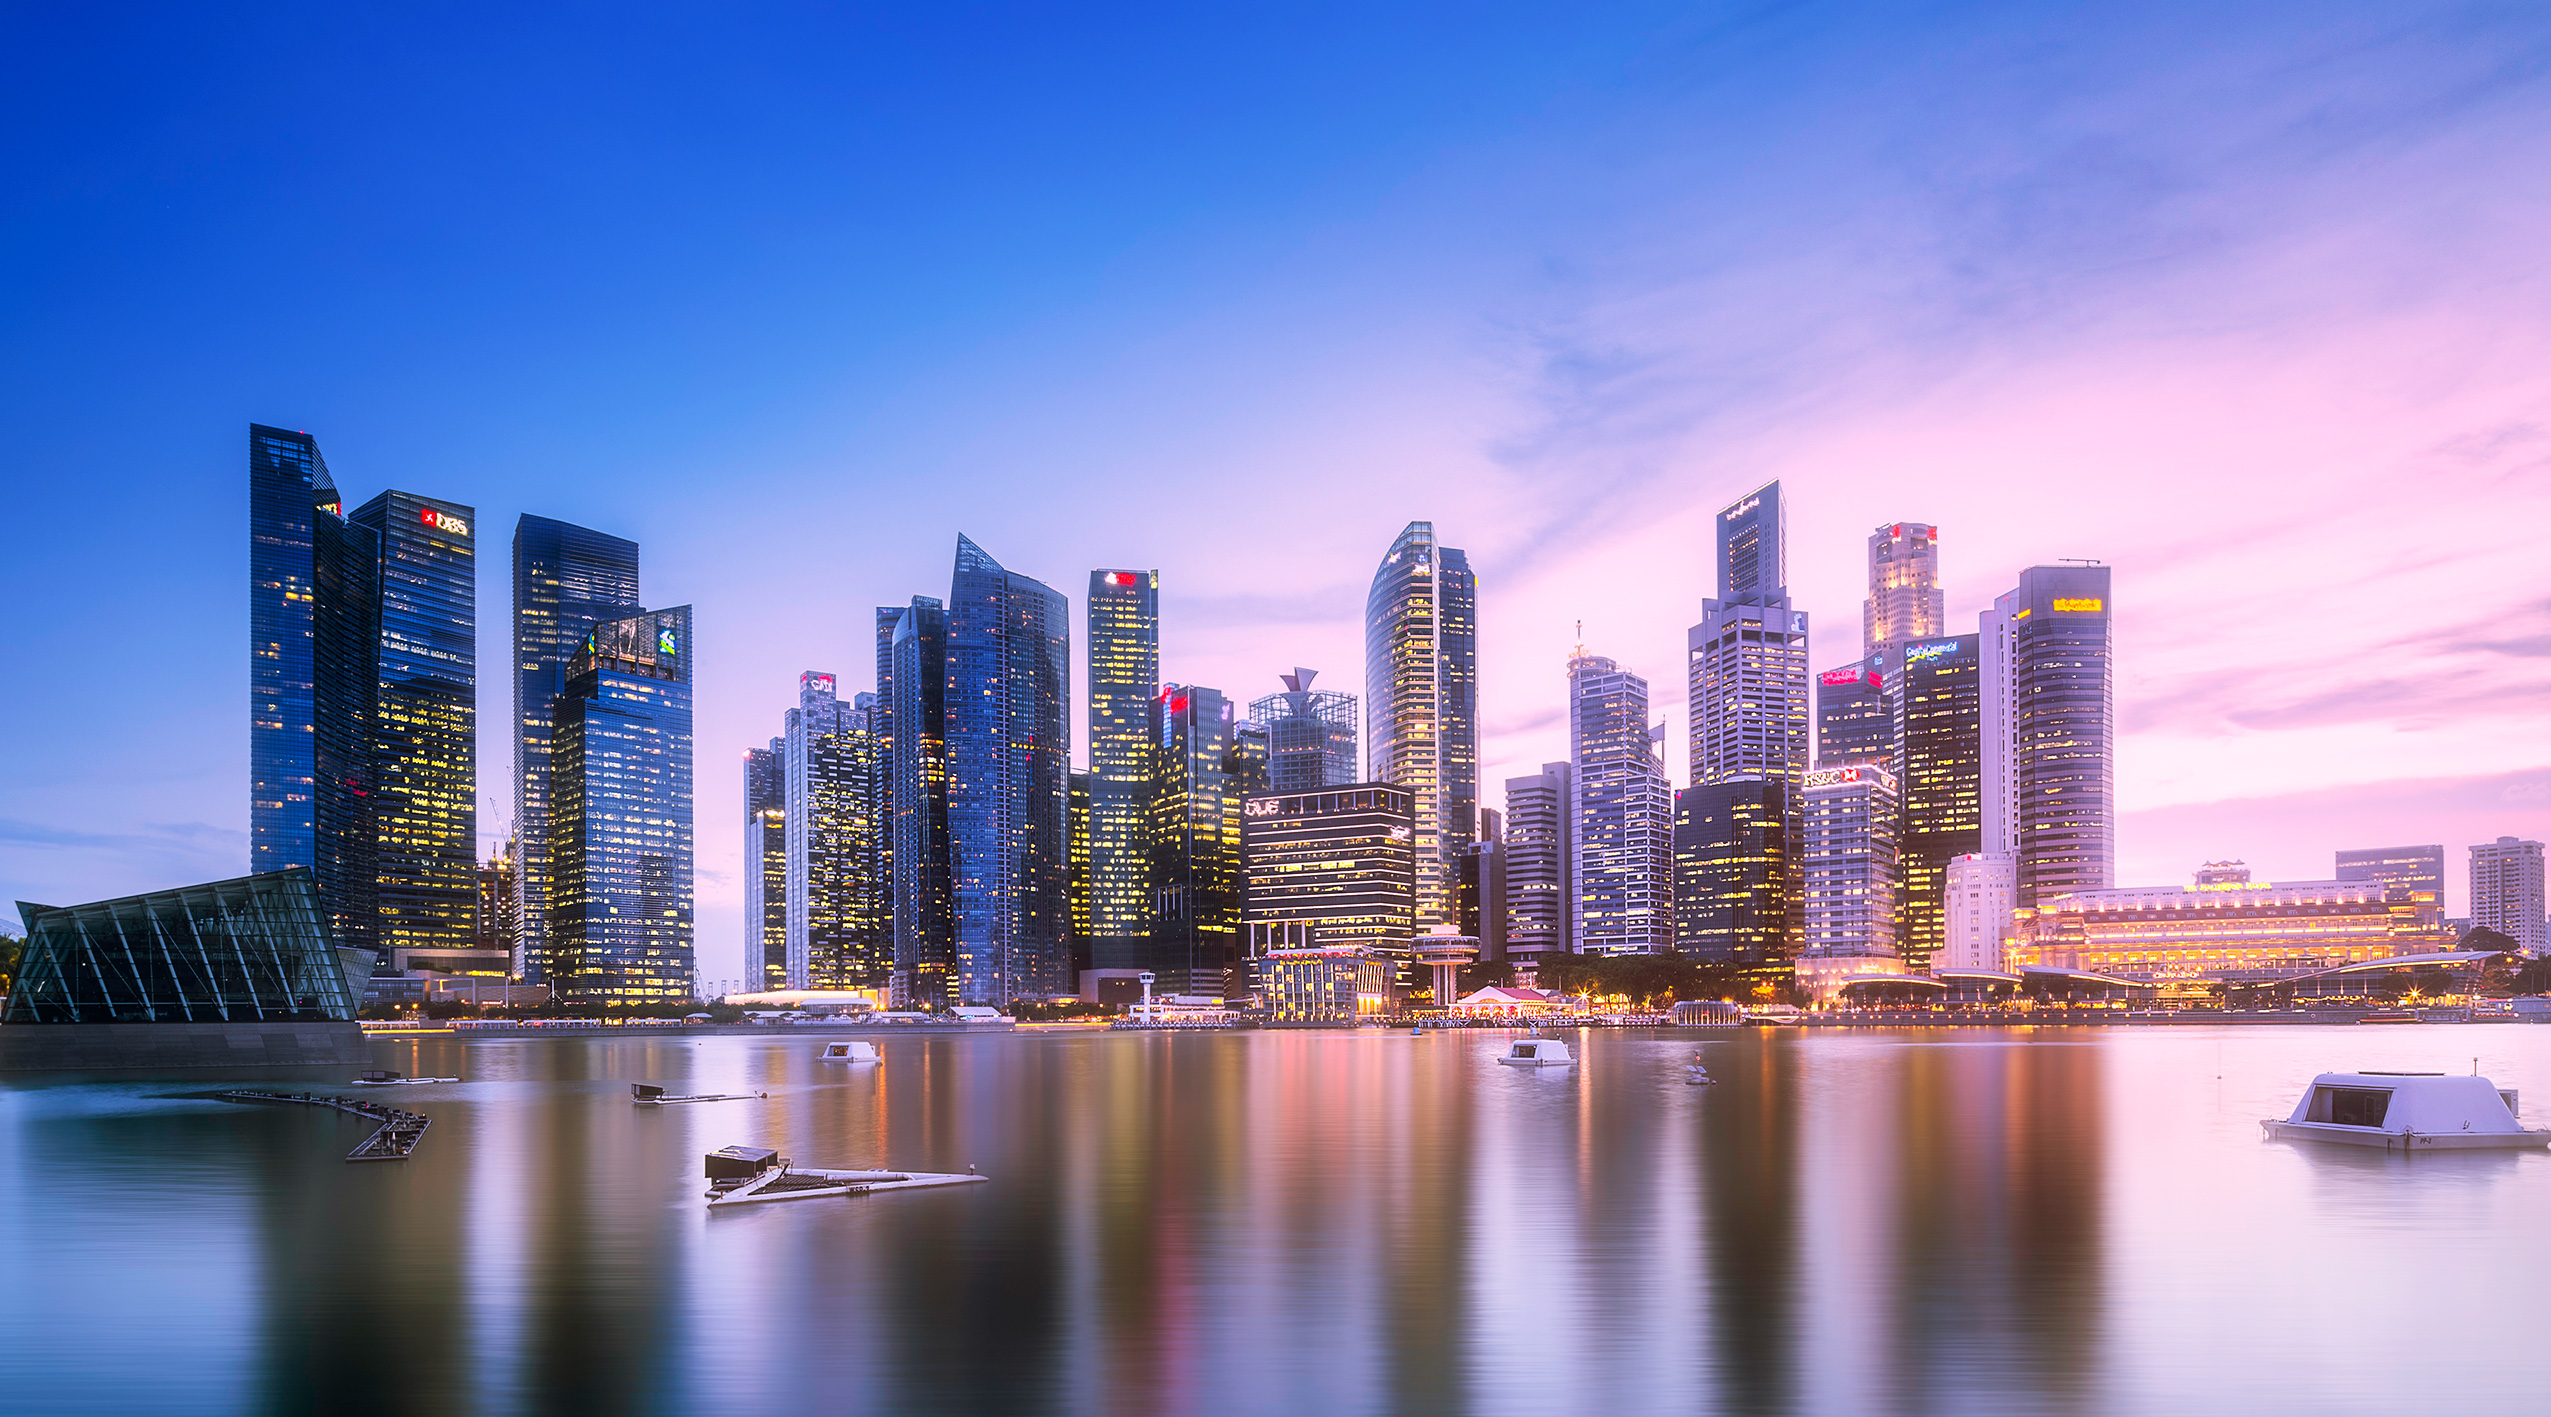 Singapore skyline panoramic view